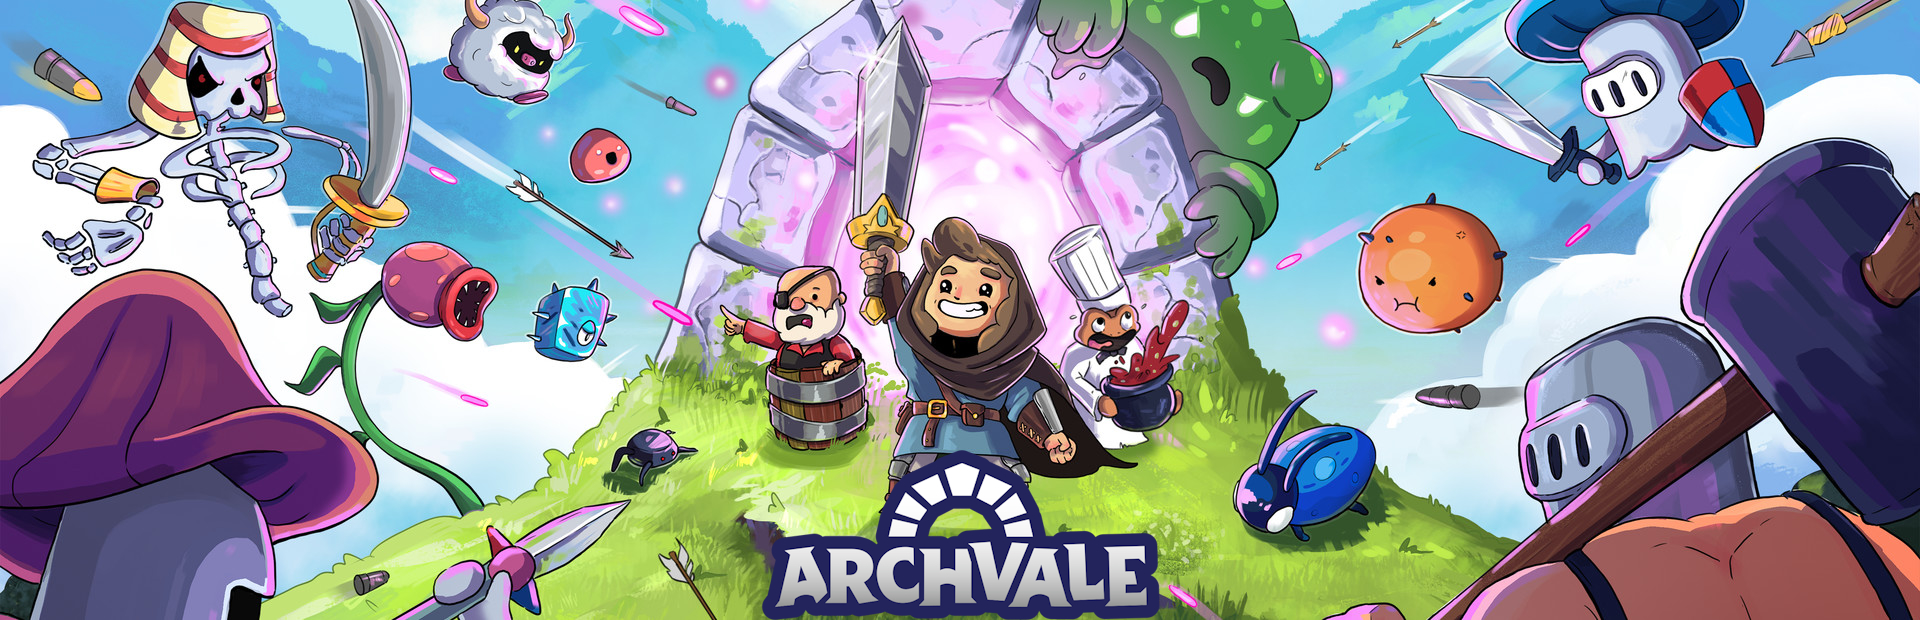 دانلود بازی Archvale برای کامپیوتر | گیمباتو